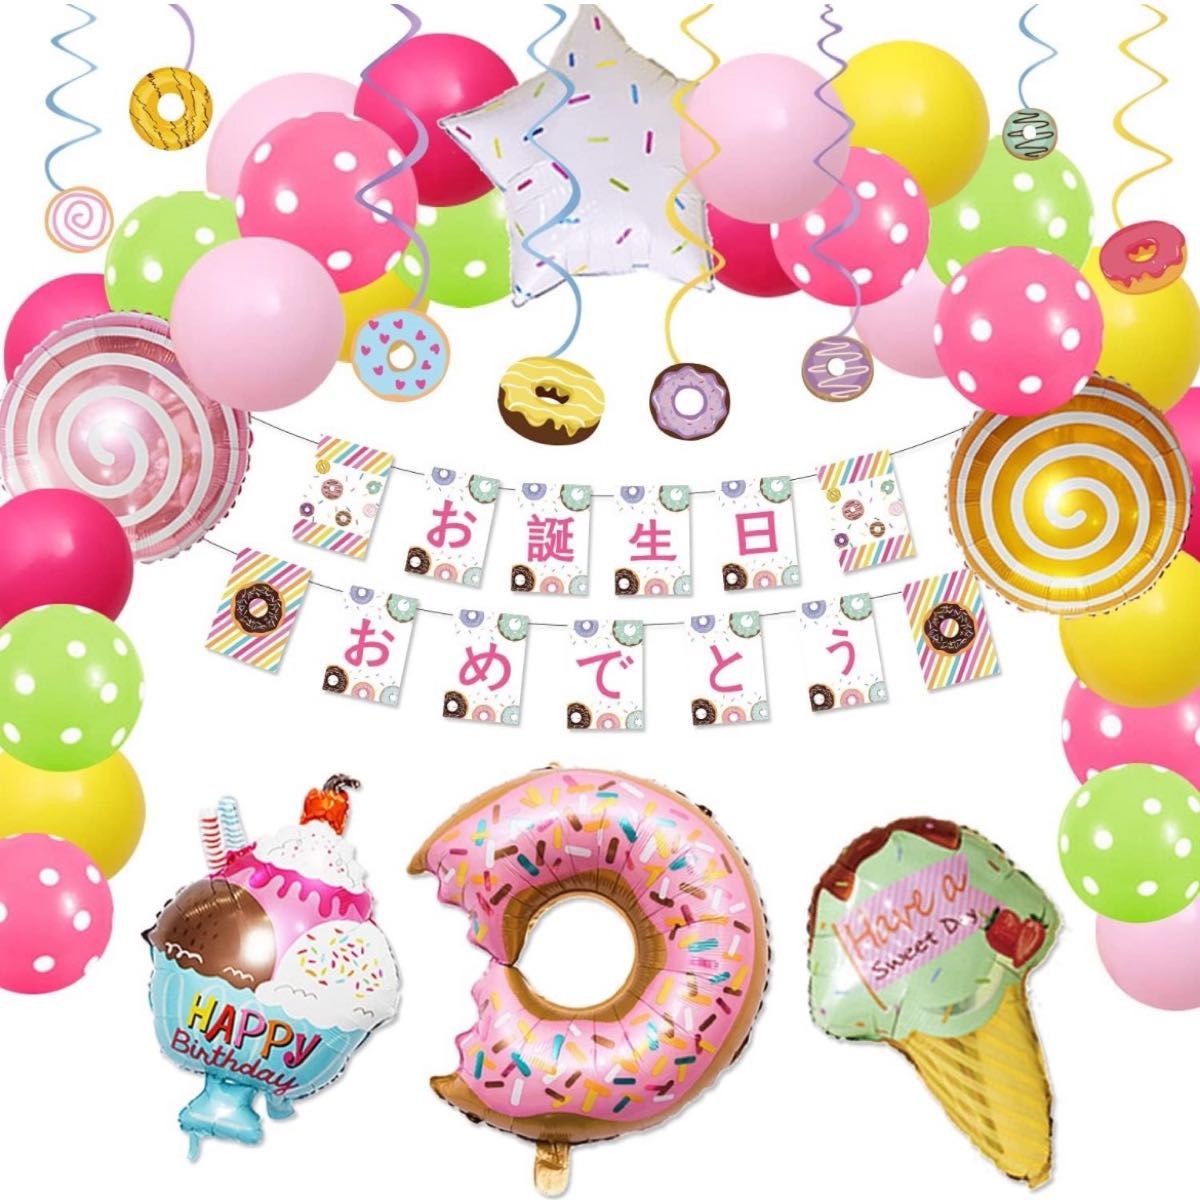 風船 ドーナツ バルーン キャンディー 誕生日 飾り付け 女の子 バースデー